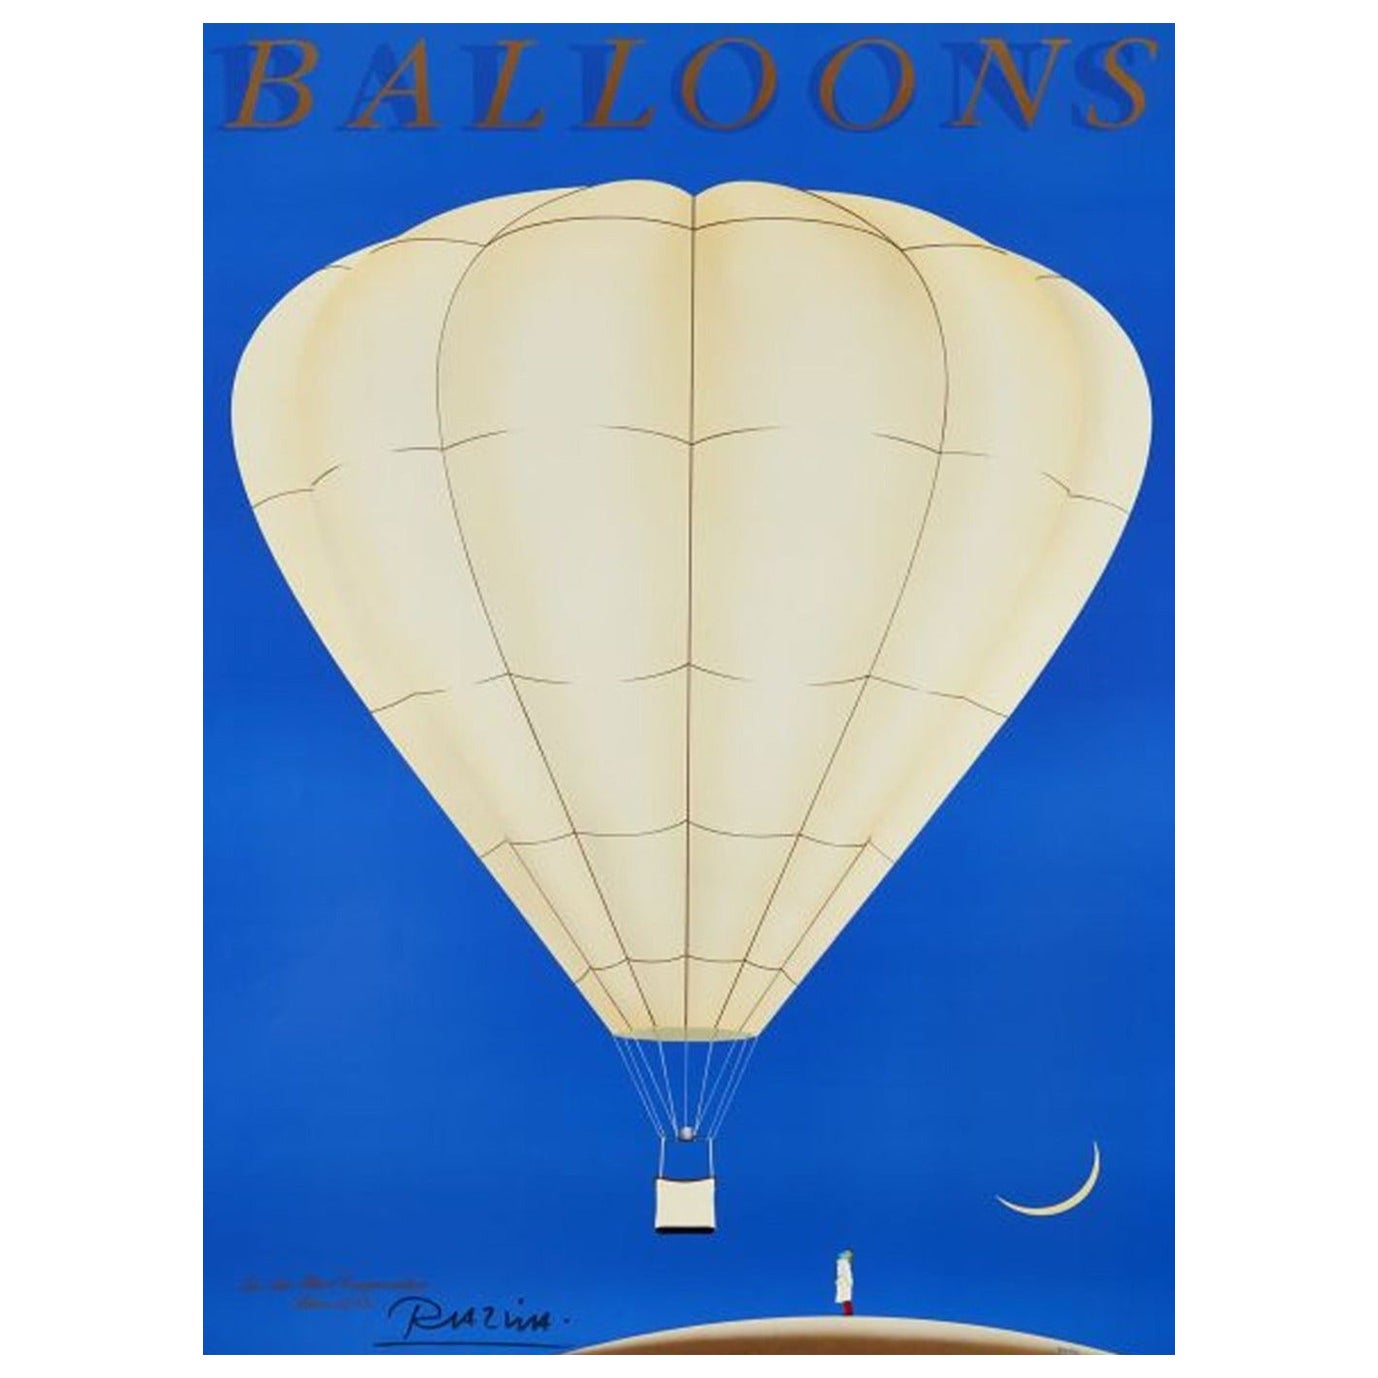 1985 Balloons - Razzia Original Vintage Poster